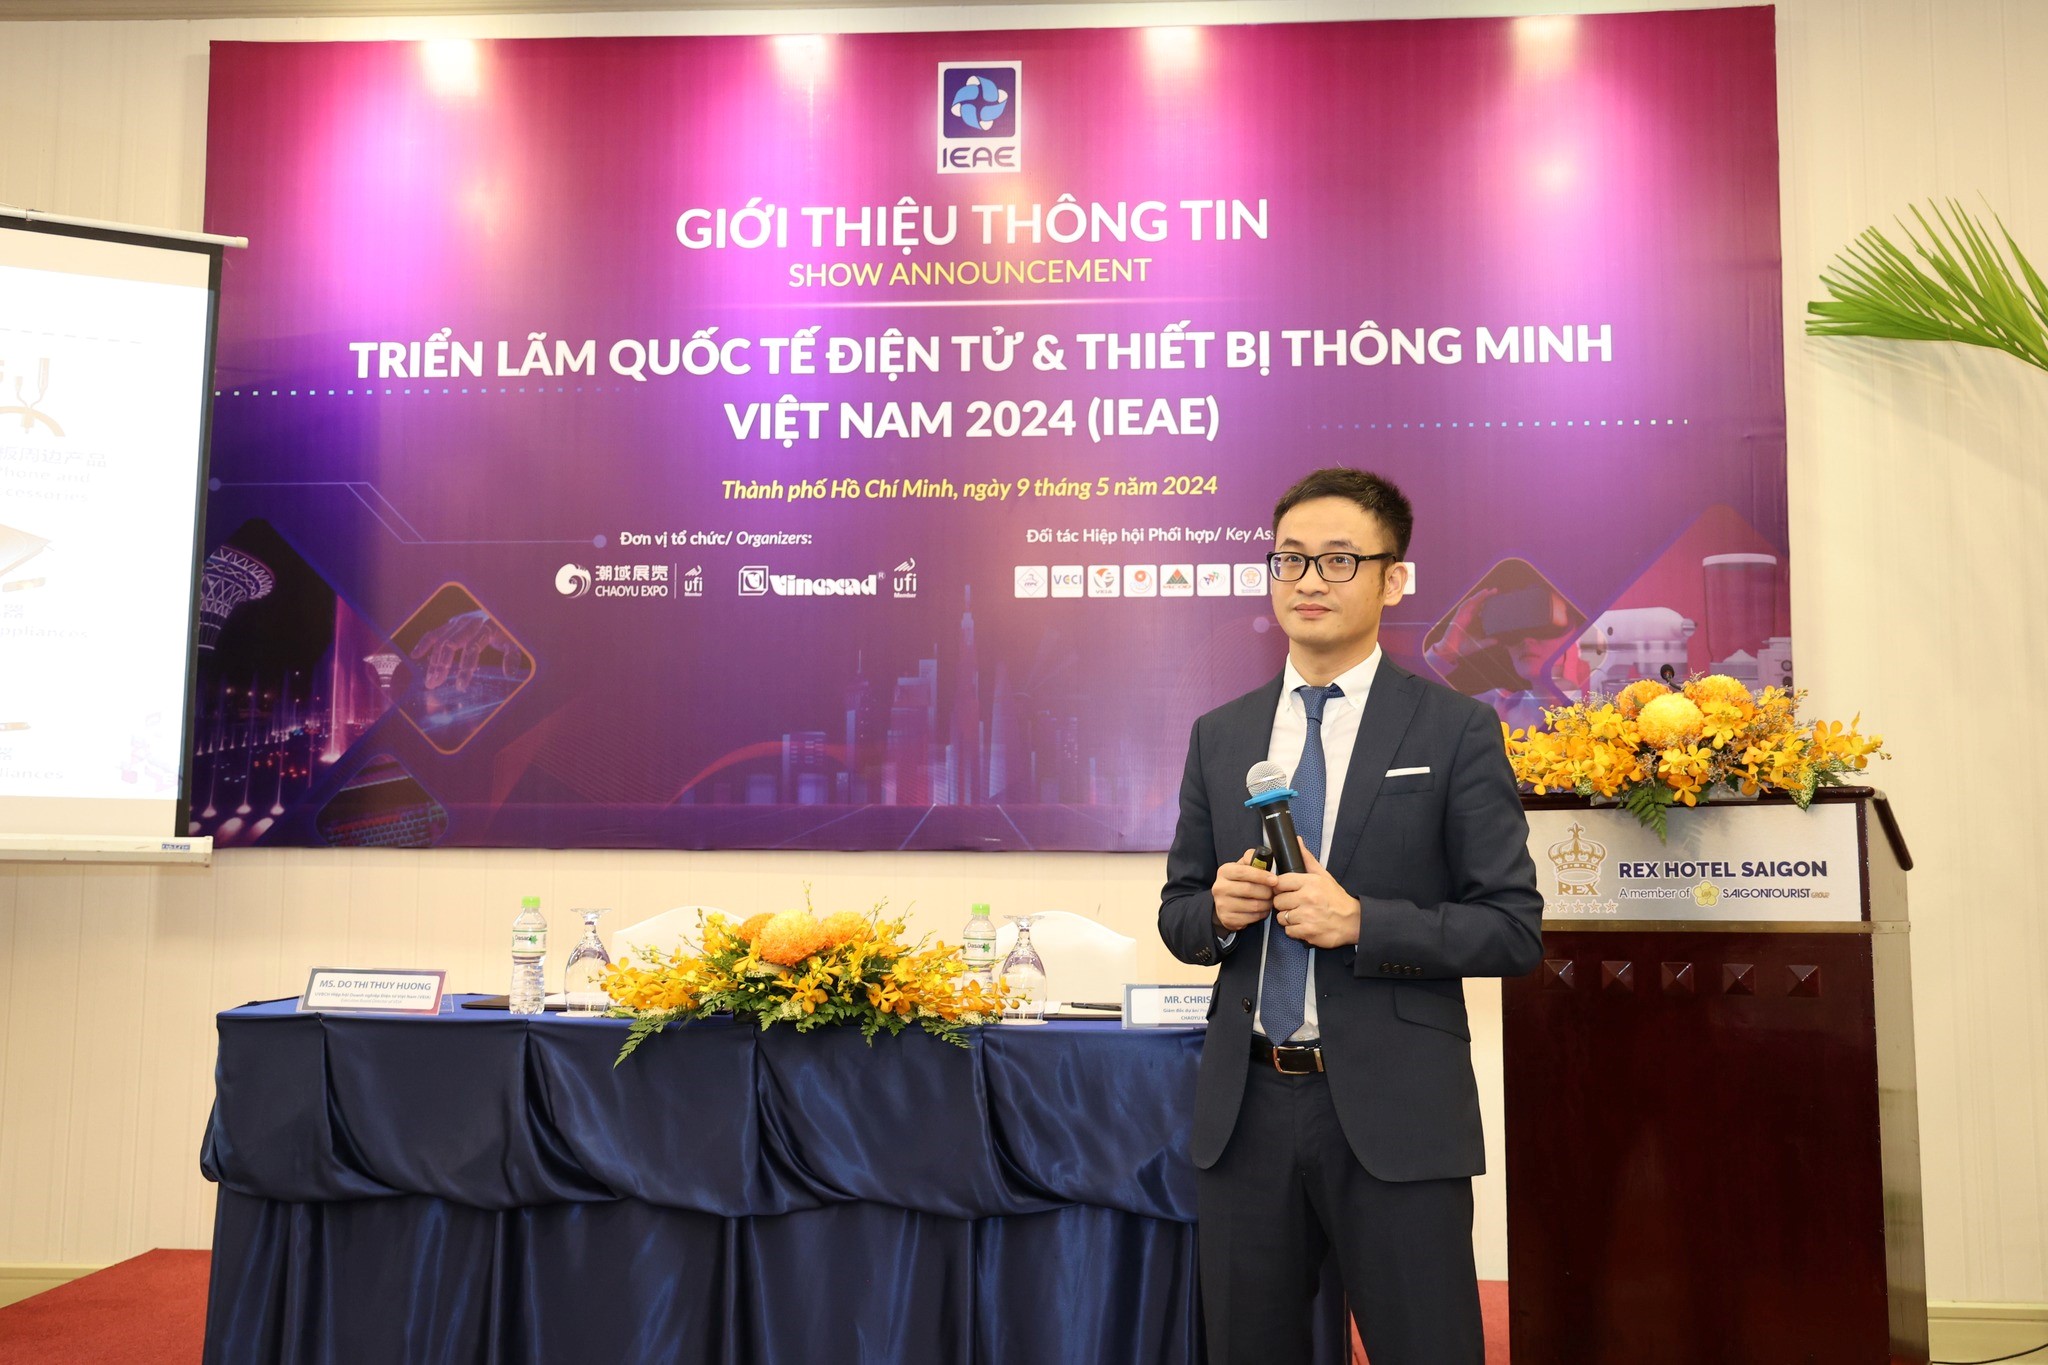 Triển lãm quốc tế điện tử và thiết bị thông minh Việt Nam (IEAE) 2024